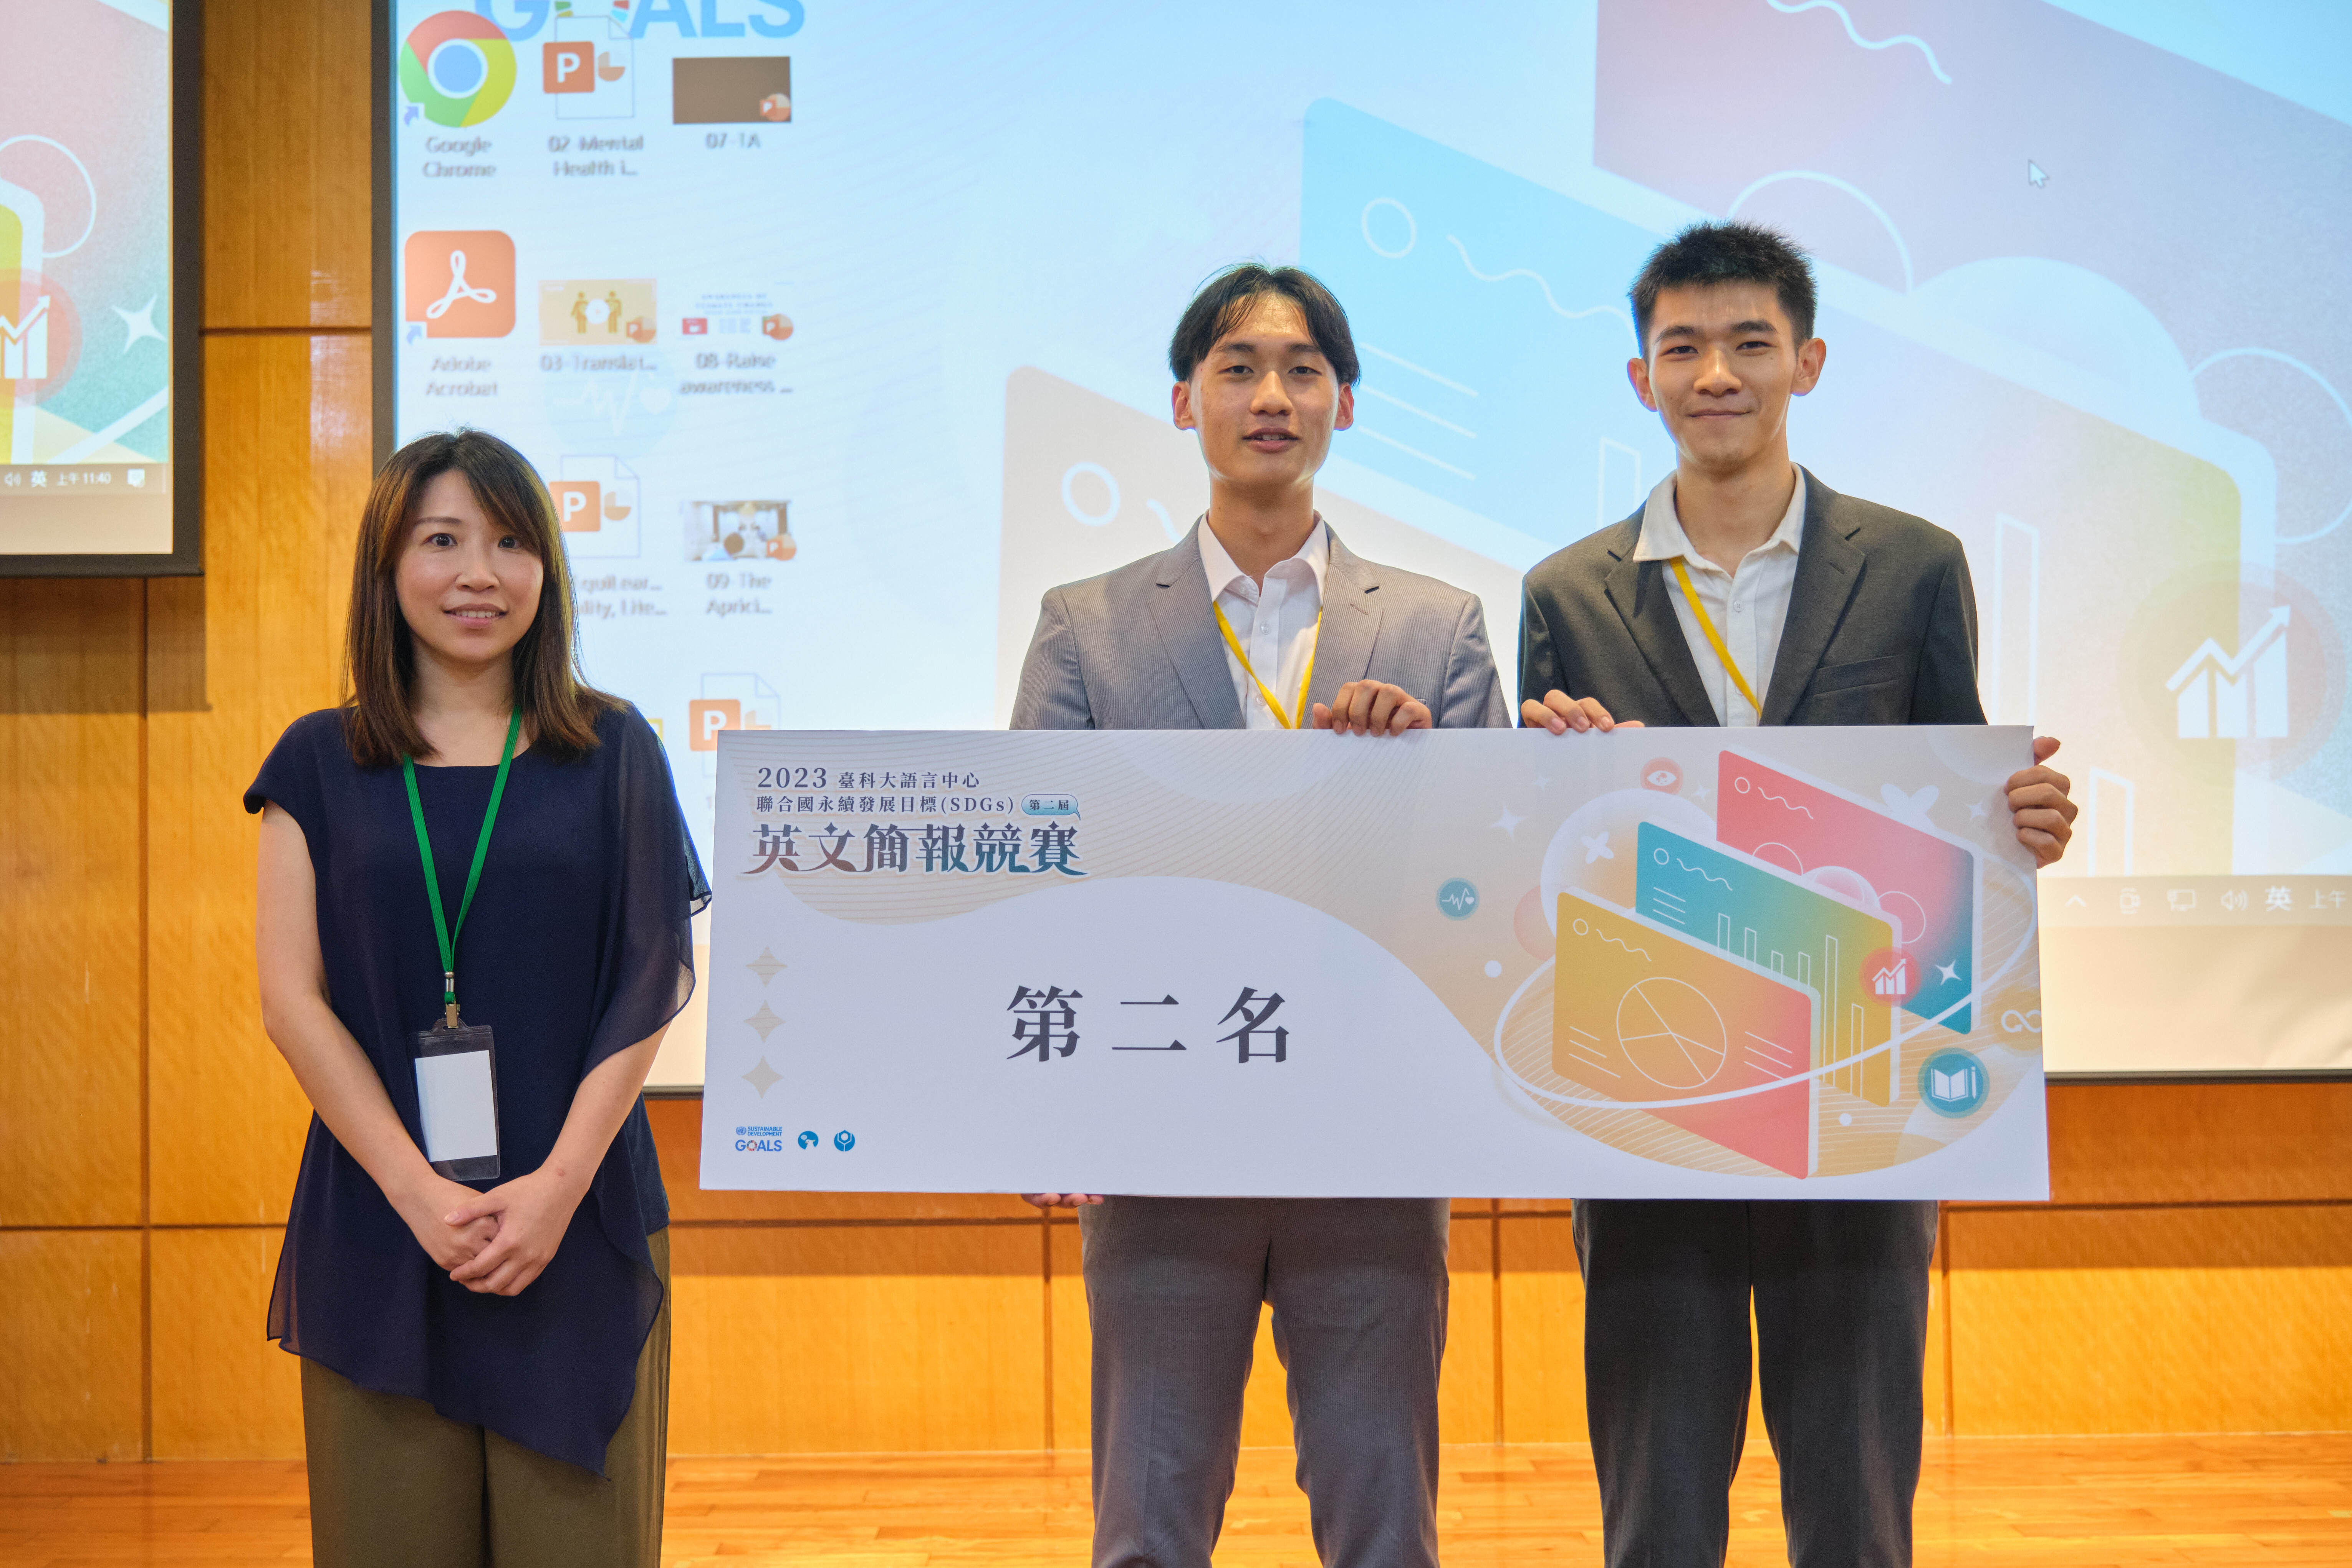 電子工程系學生郭冠廷與黃致恩同學得到第二名。